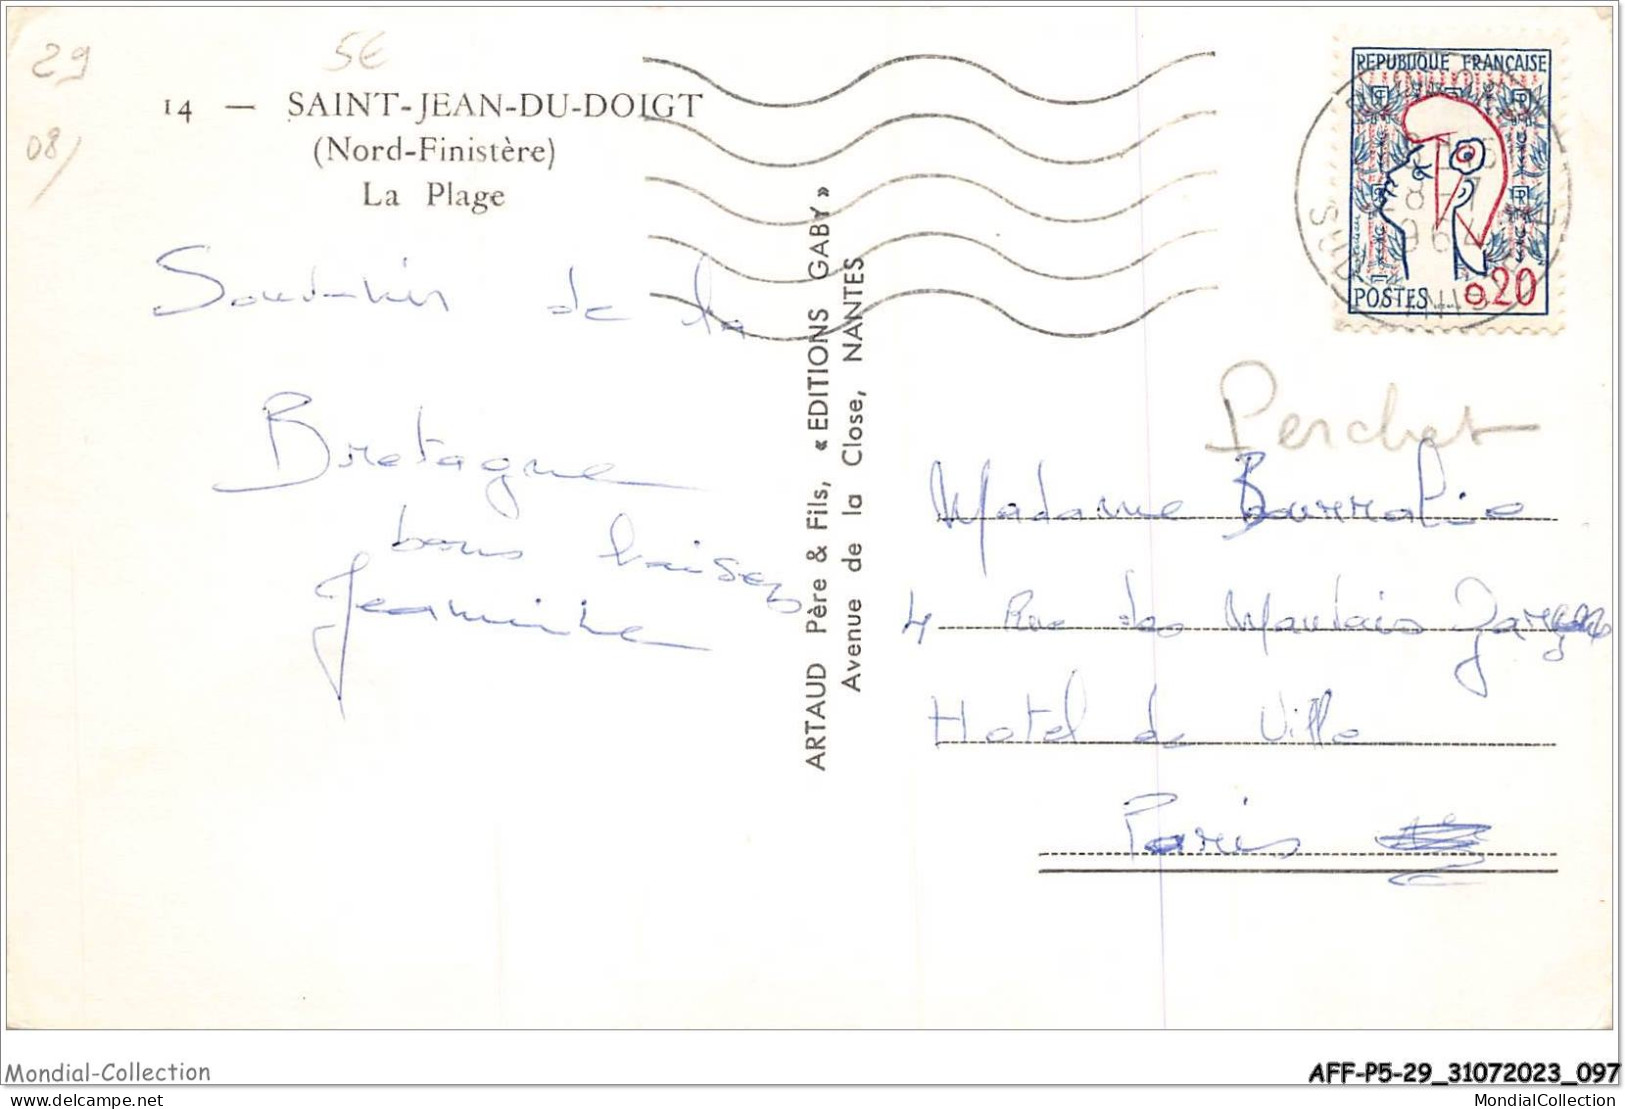 AFFP5-29-0400 - SAINT-JEAN-DU-DOIGT - La Plage  - Saint-Jean-du-Doigt